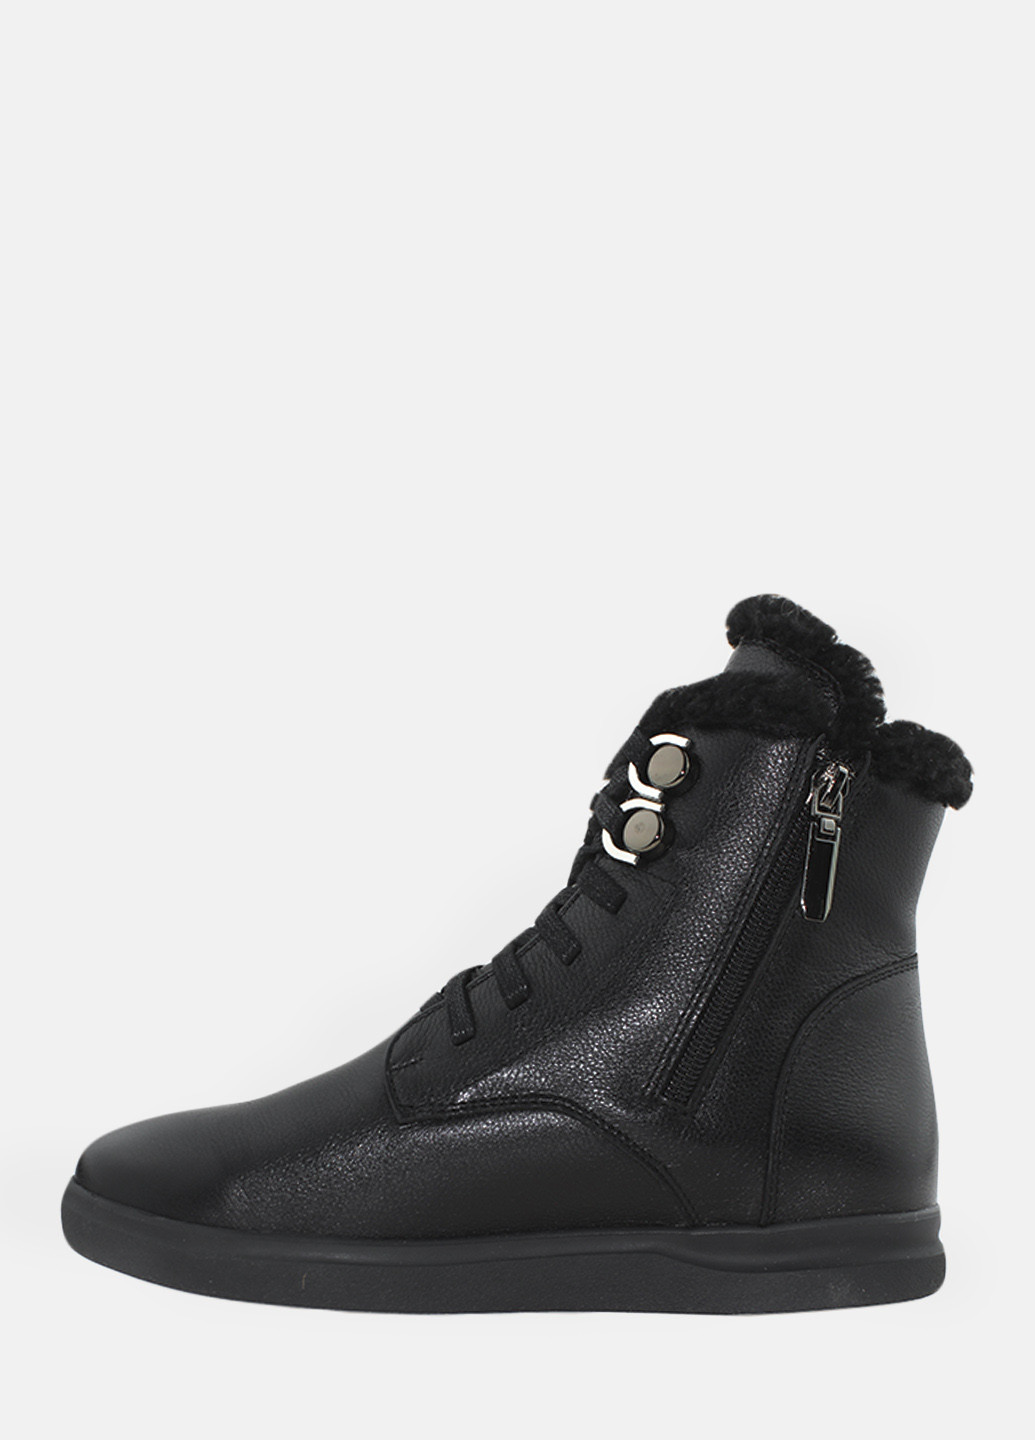 Зимние ботинки rp7739 черный Passati